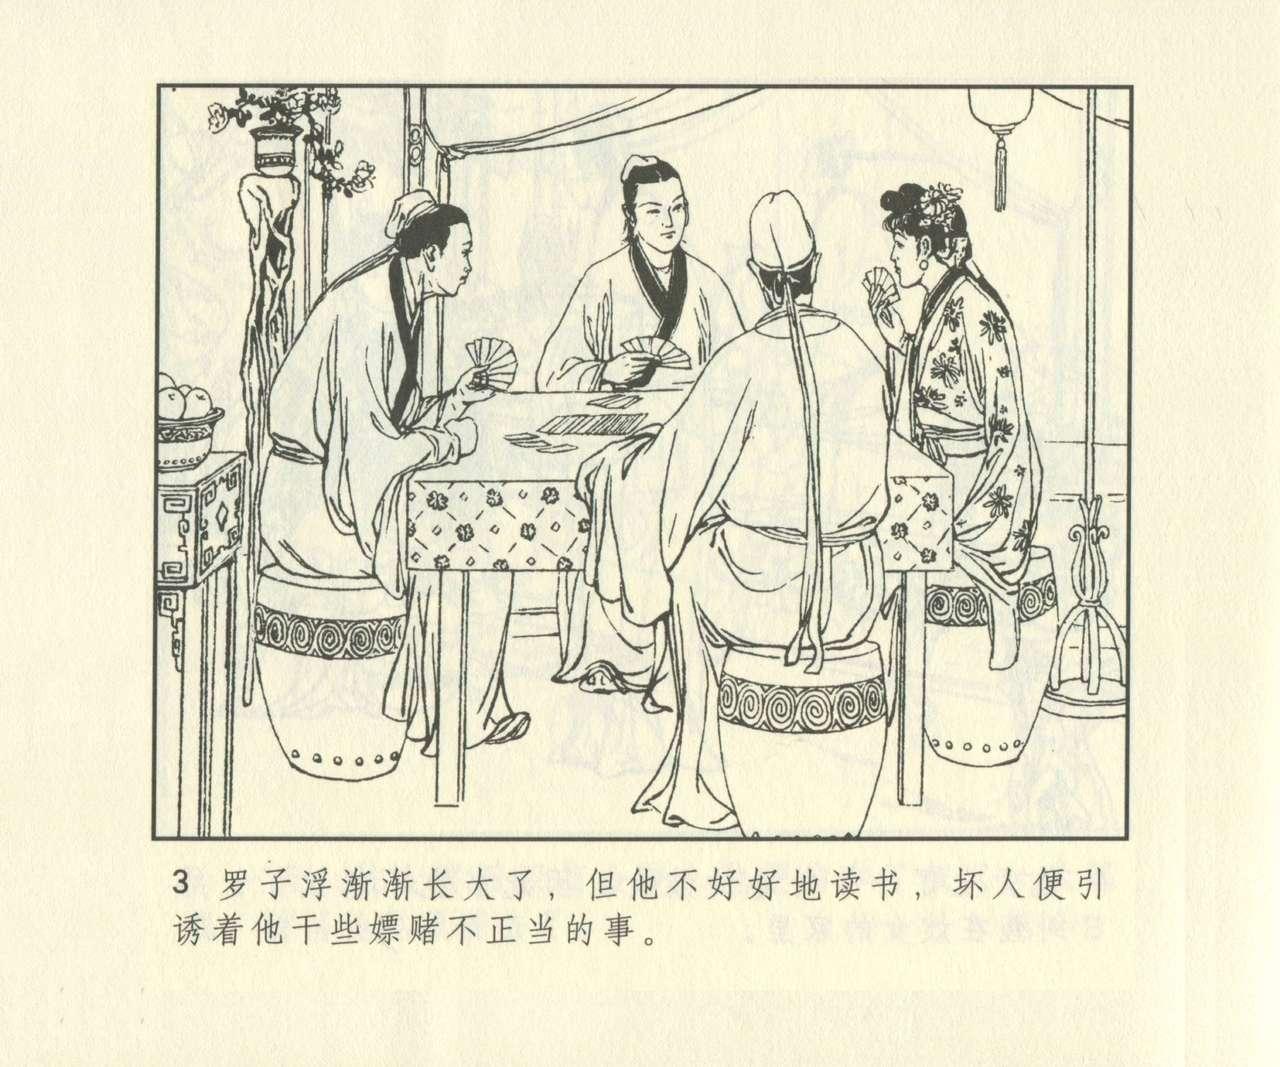 聊斋志异 张玮等绘 天津人民美术出版社 卷二十一 ~ 三十 619